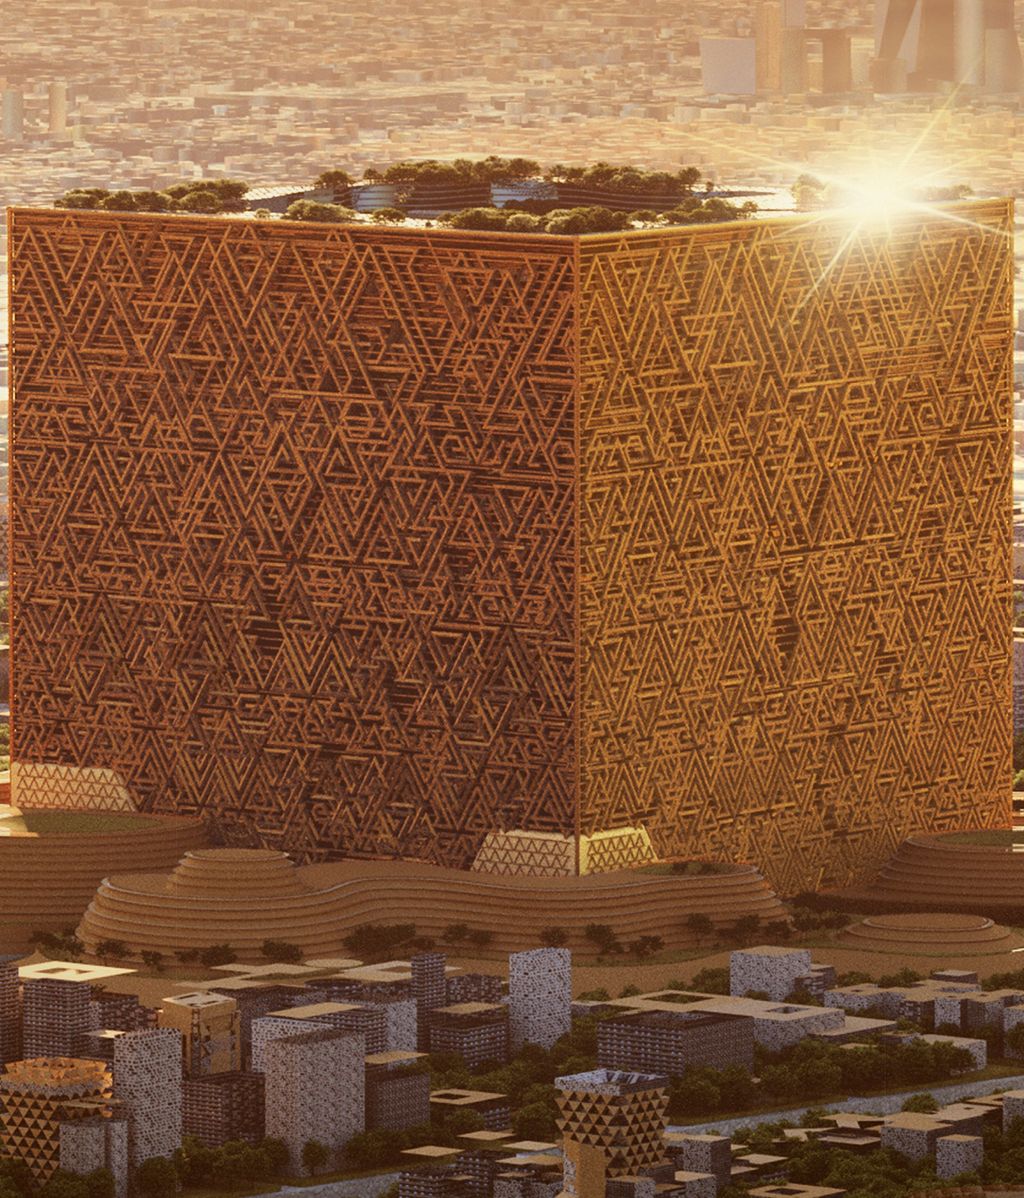 Mukaab, el gigantesco cubo que está construyendo Arabia Saudí